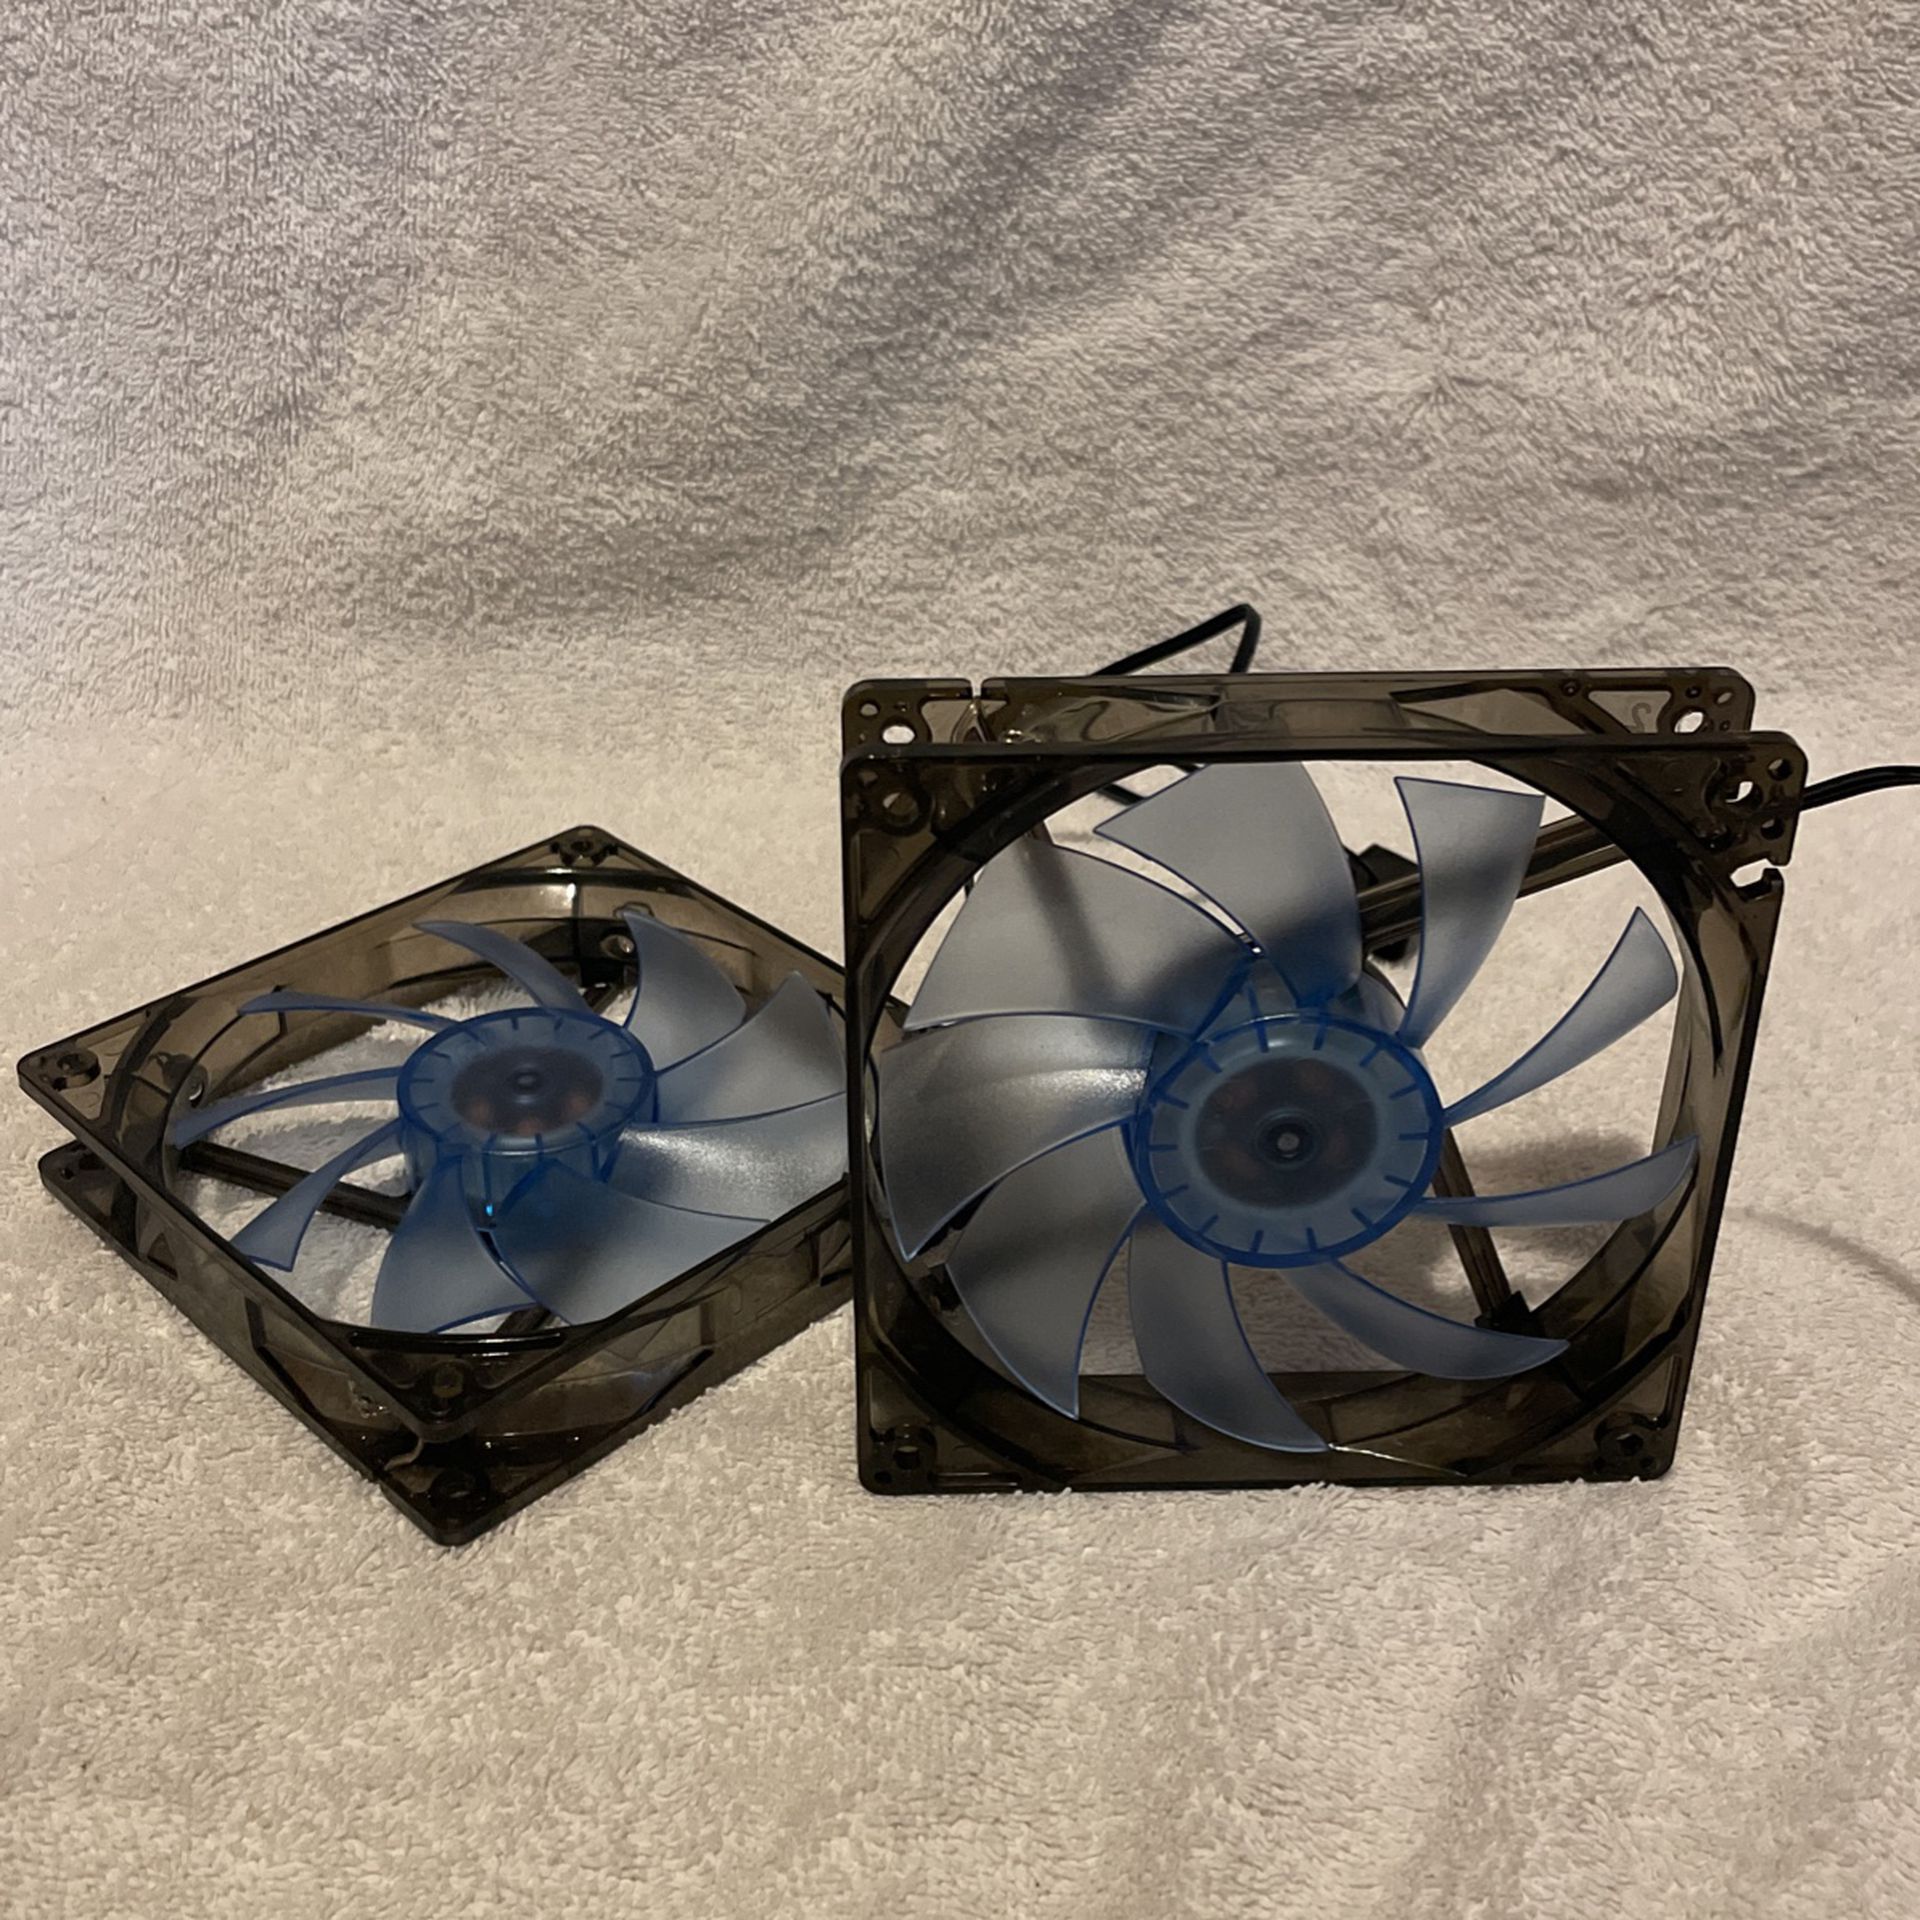 2 Blue LED 140mm PC Fans